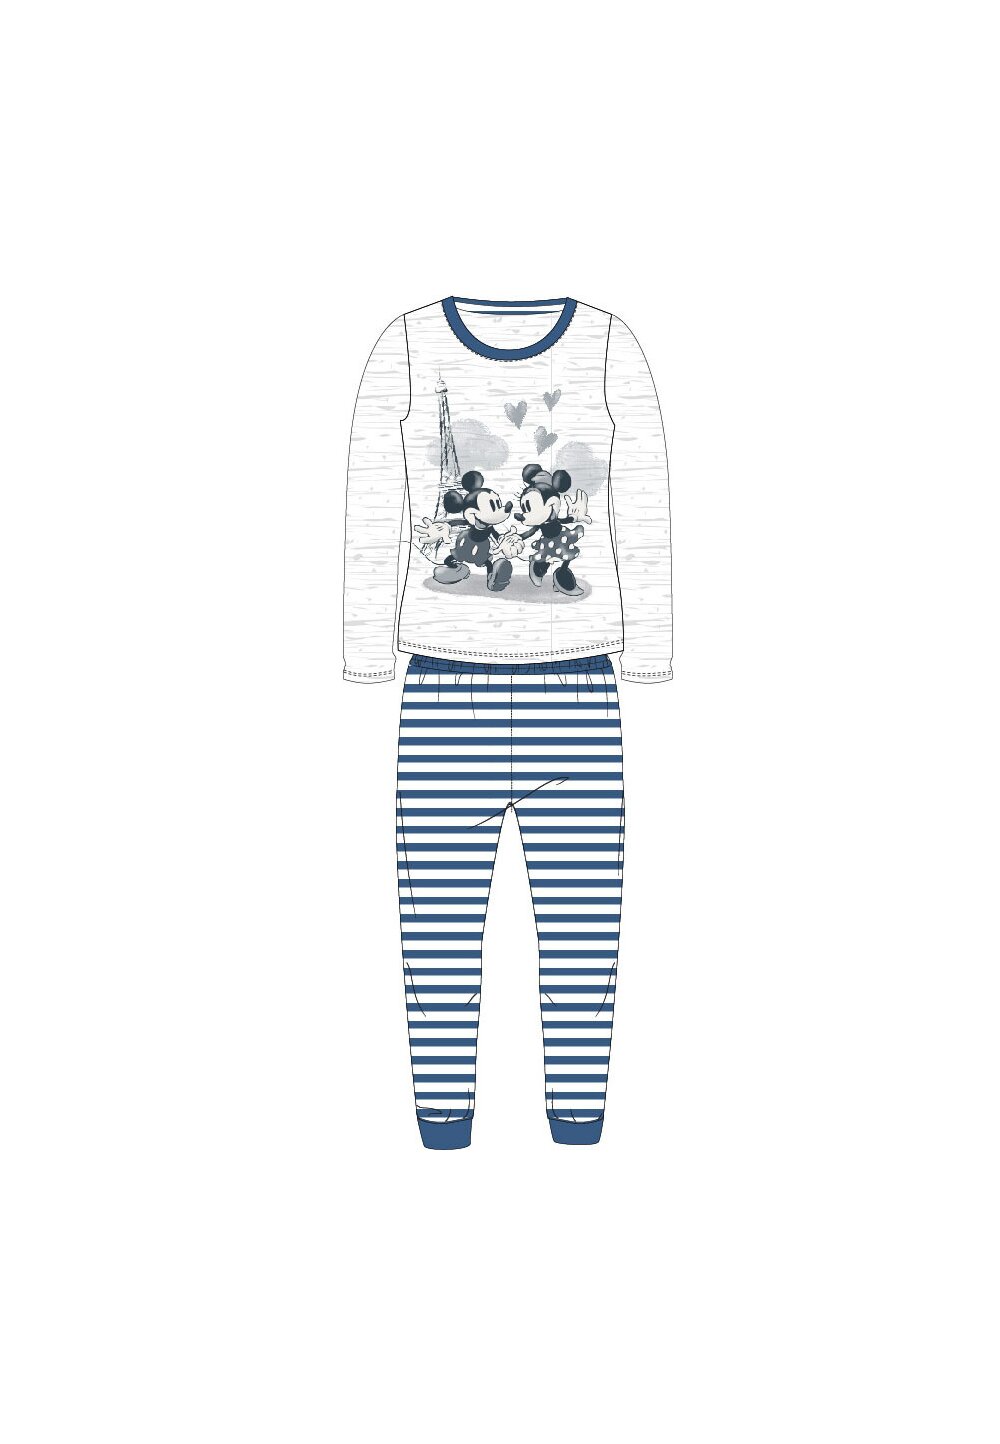 Pijama ML, 98%bumbac, cu imprimeu, Minnie si Mickey in Paris, bleumarin 98%bumbac